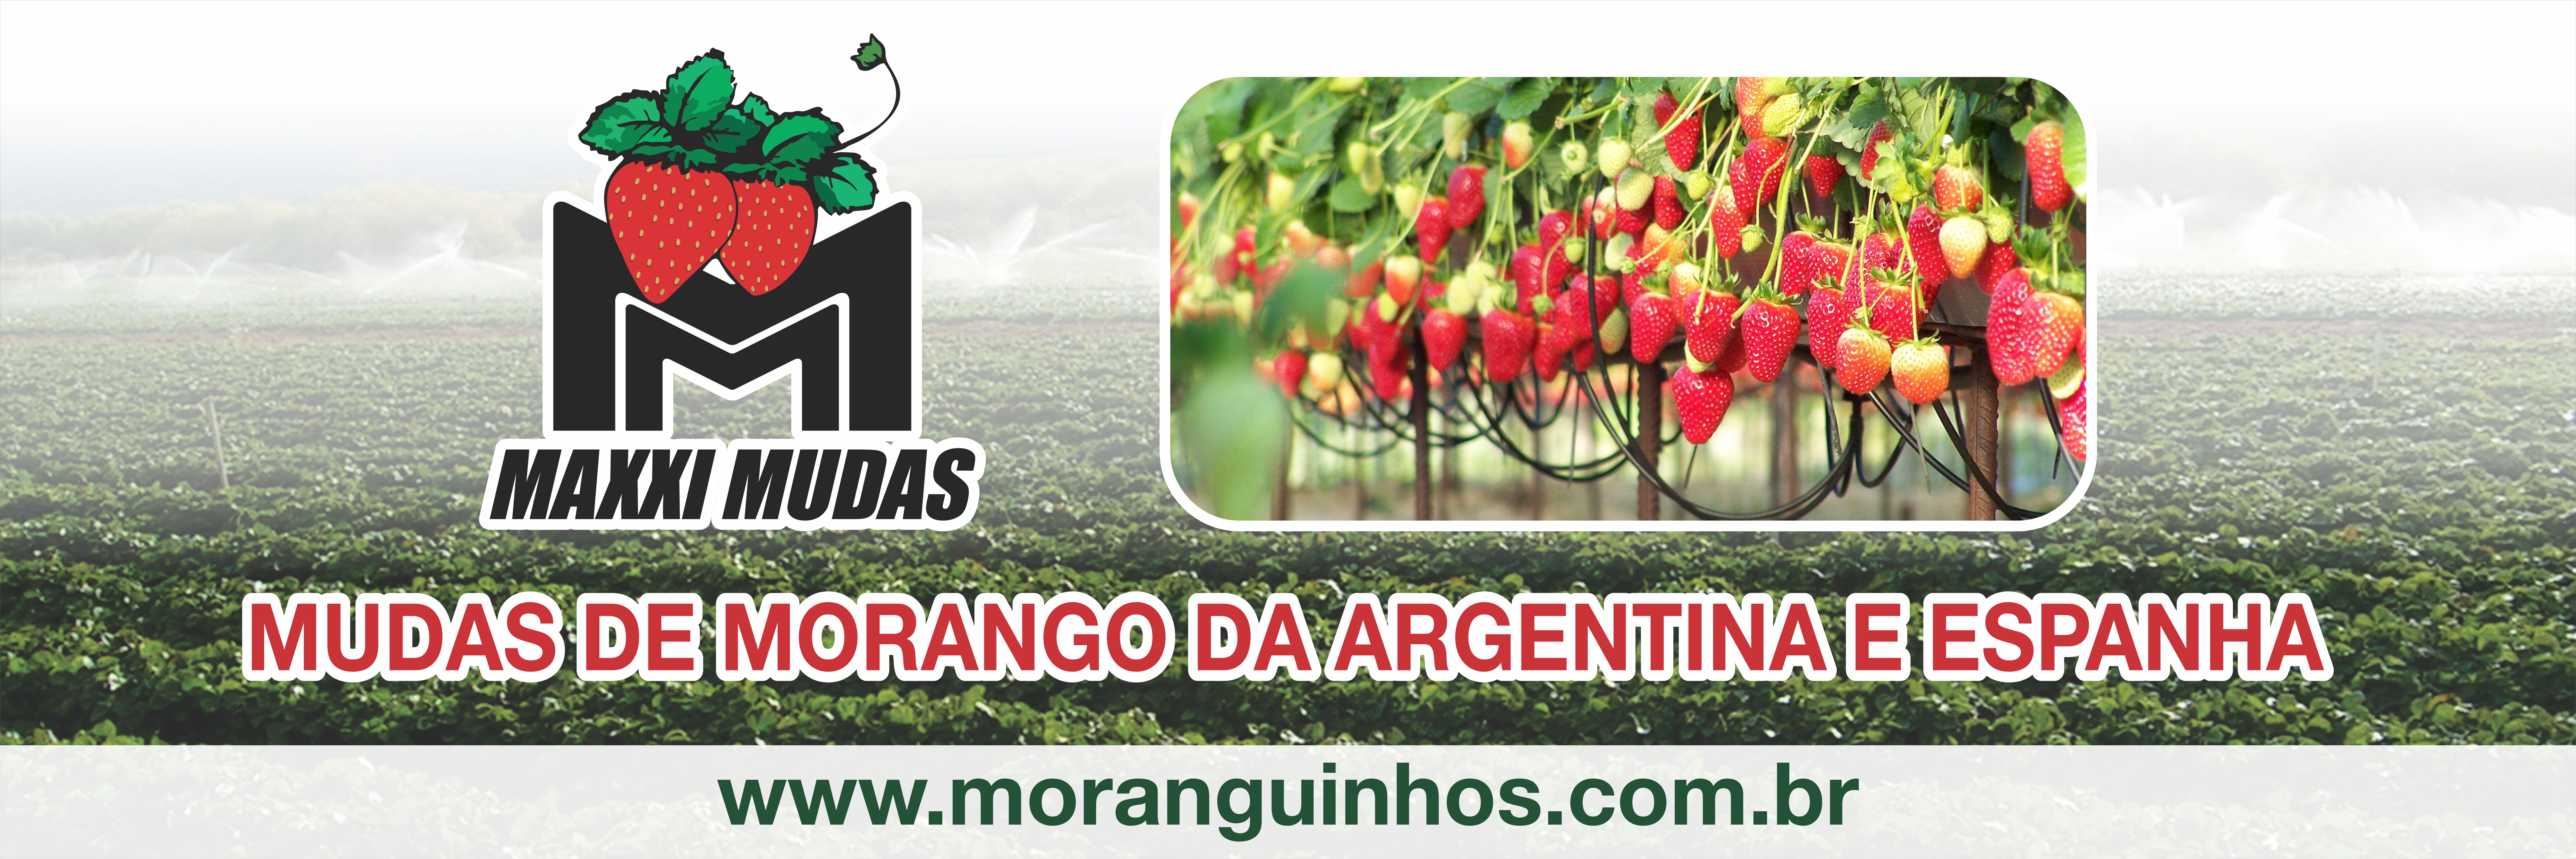 https://www.moranguinhos.com.br/